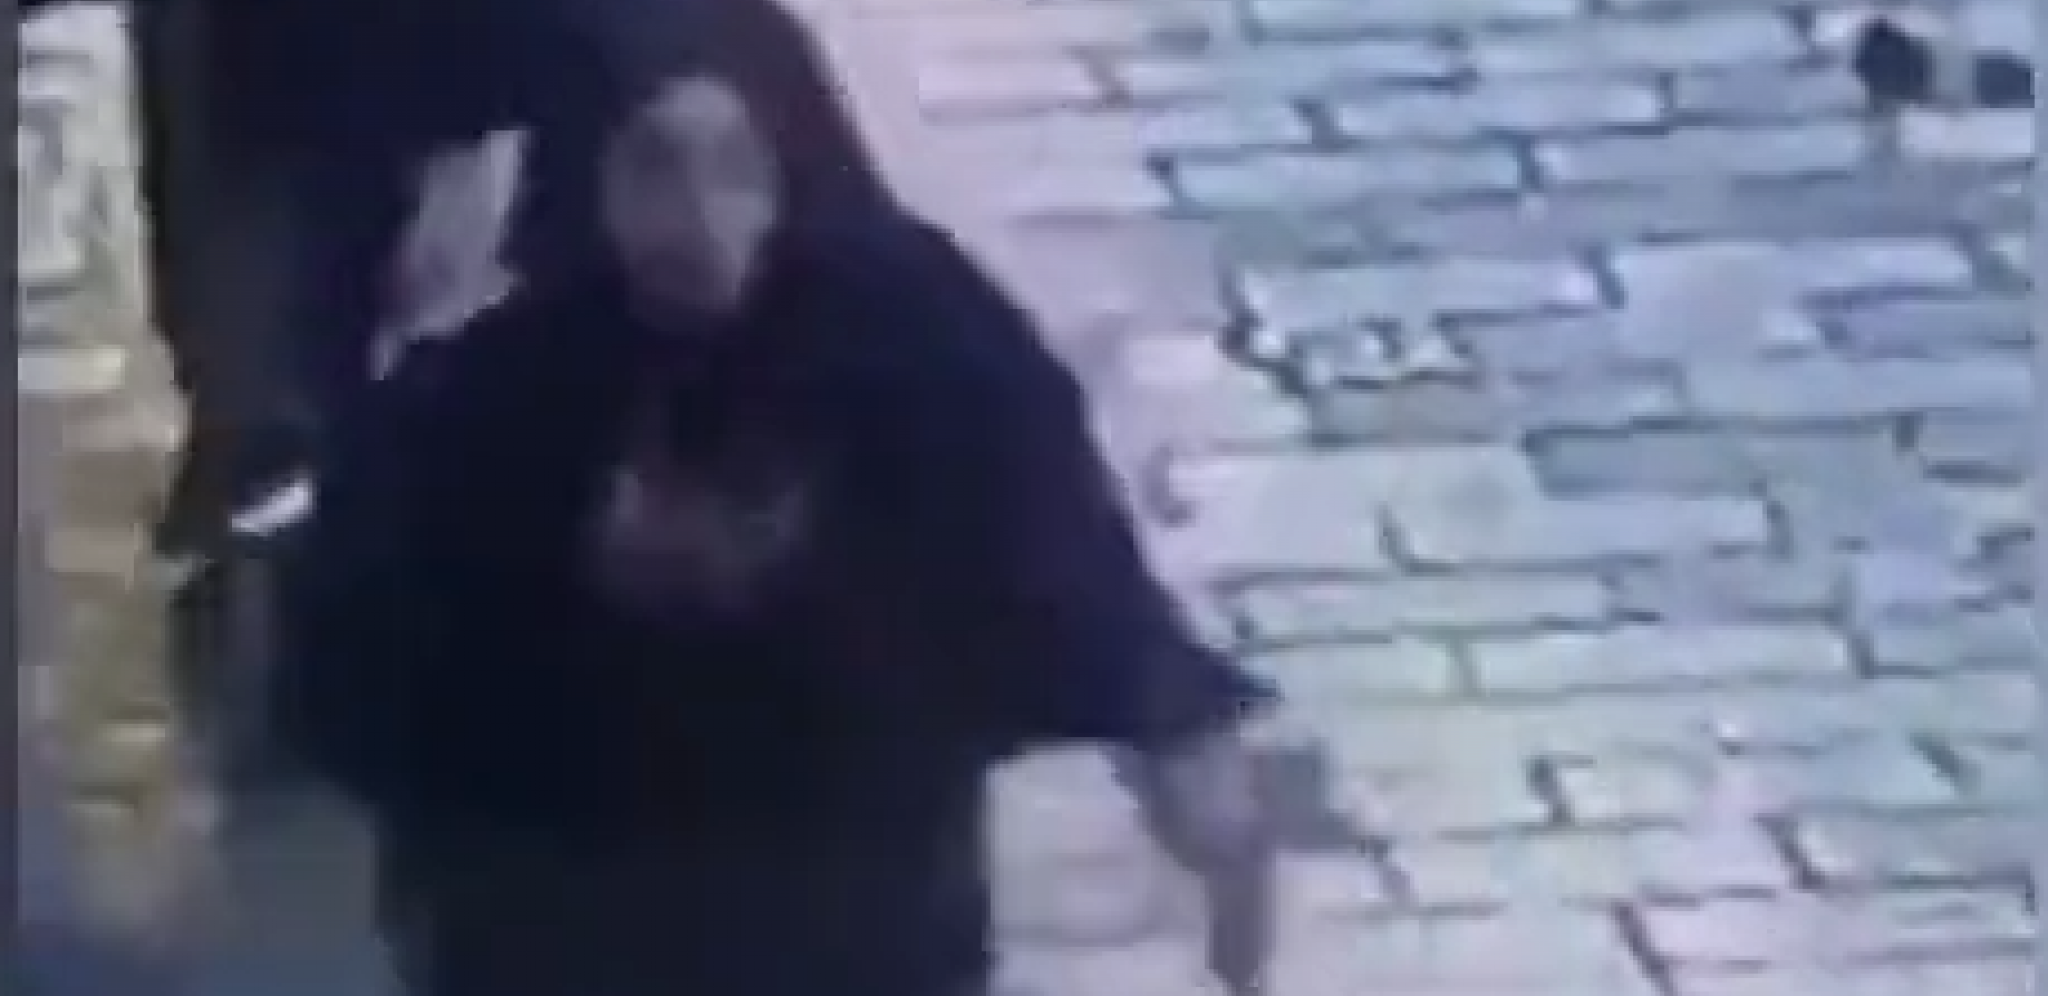 USNIMLJENA KAKO BEŽI! Ovo je žena odgvorna za bombaški napad u Istanbulu, kamera ulovila neverovatan trenutak (VIDEO)